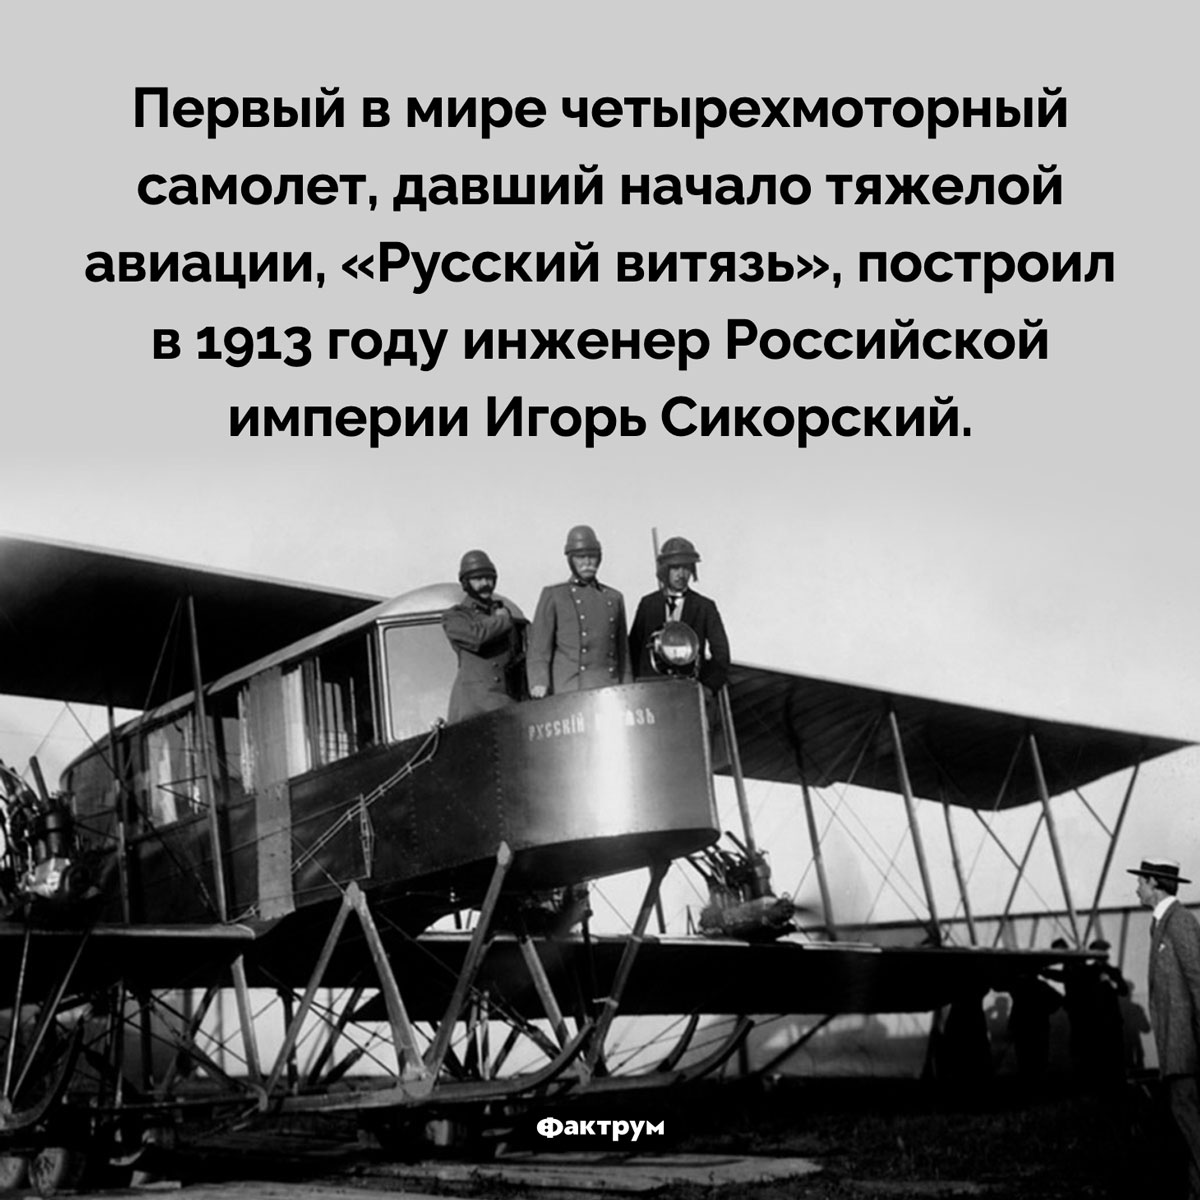 Рождение тяжелой авиации. Первый в мире четырехмоторный самолет, давший начало тяжелой авиации, «Русский витязь», построил в 1913 году инженер Российской империи Игорь Сикорский.